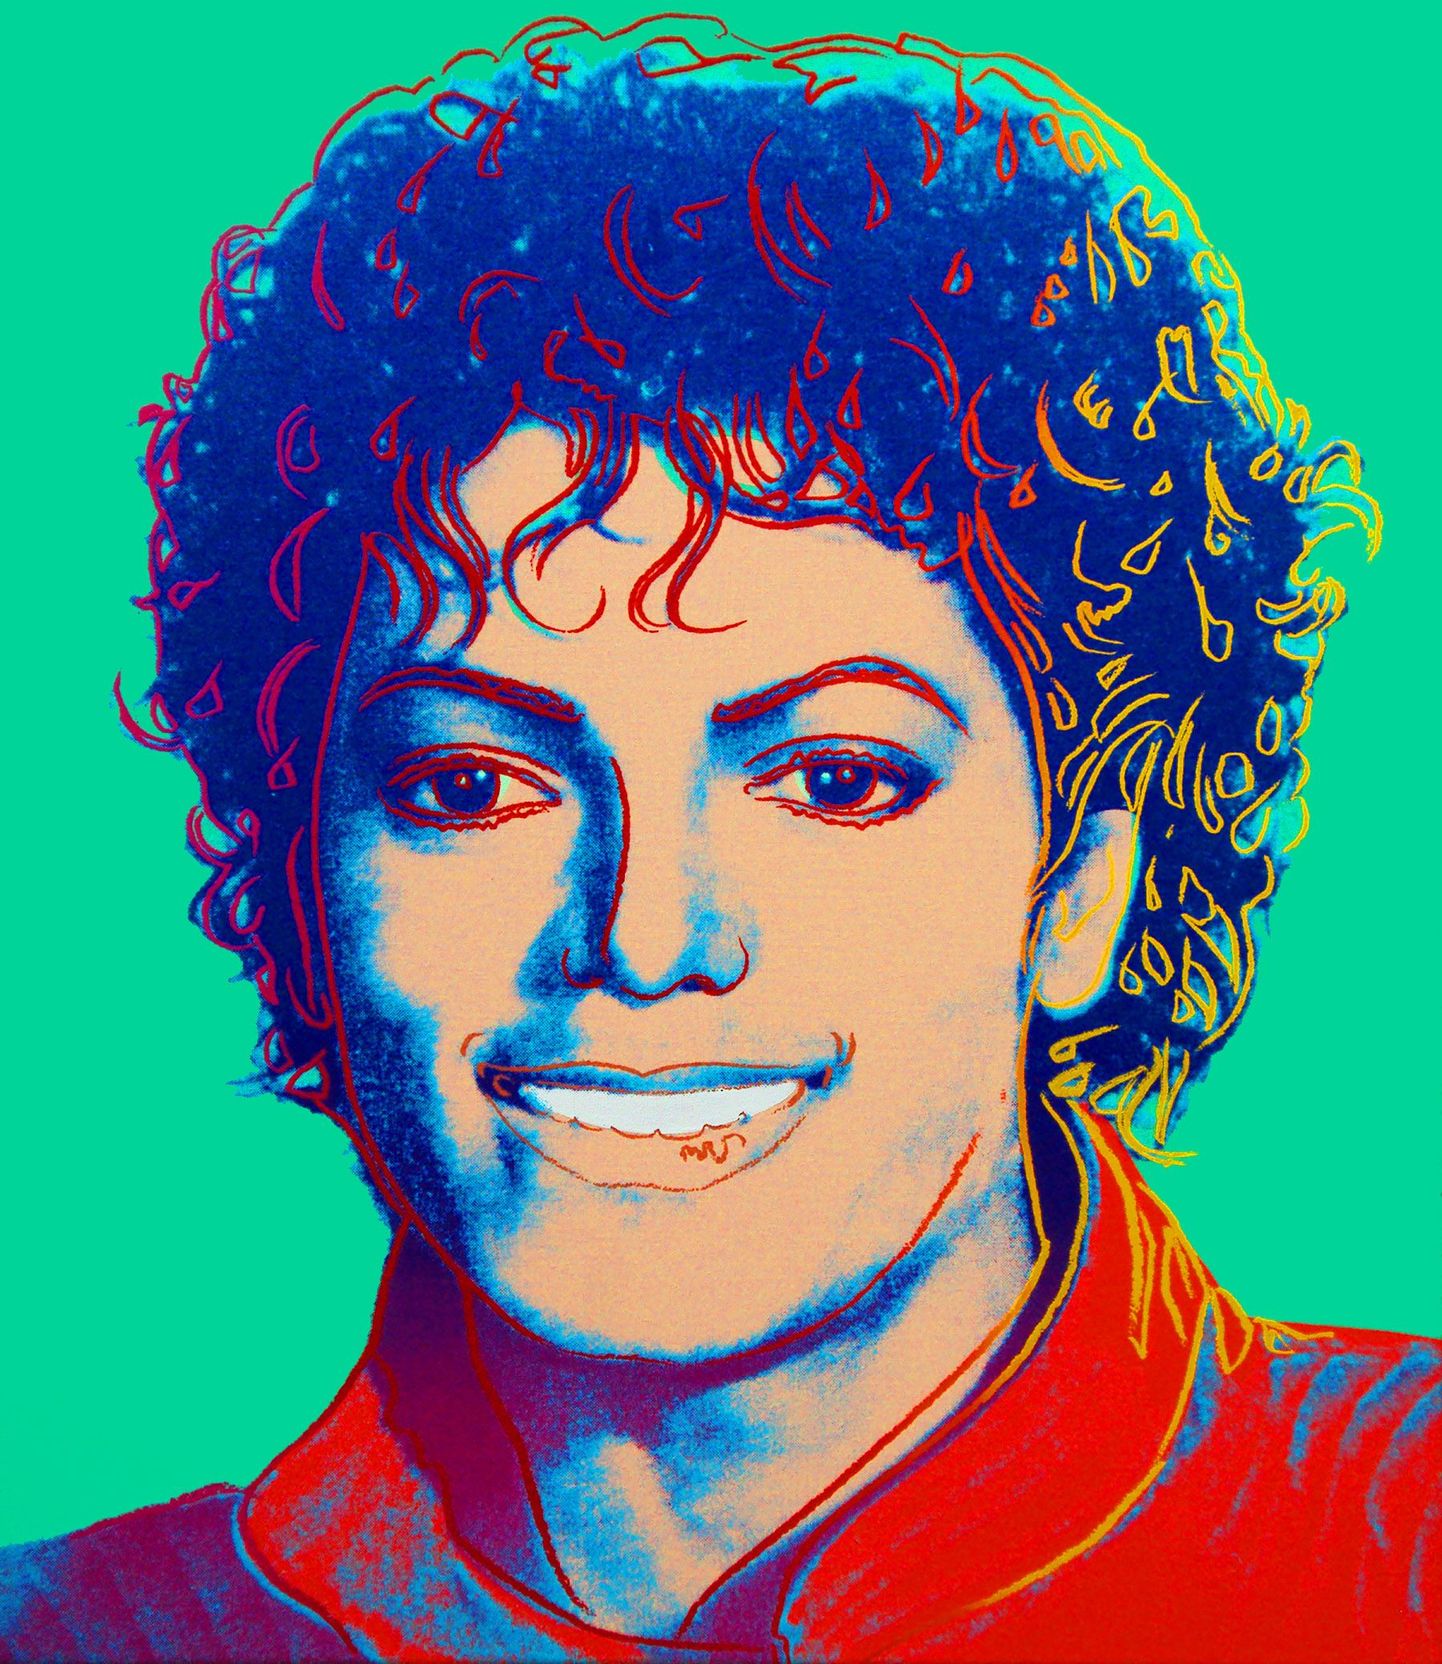 Andy Warholi "Michael Jackson 1984"